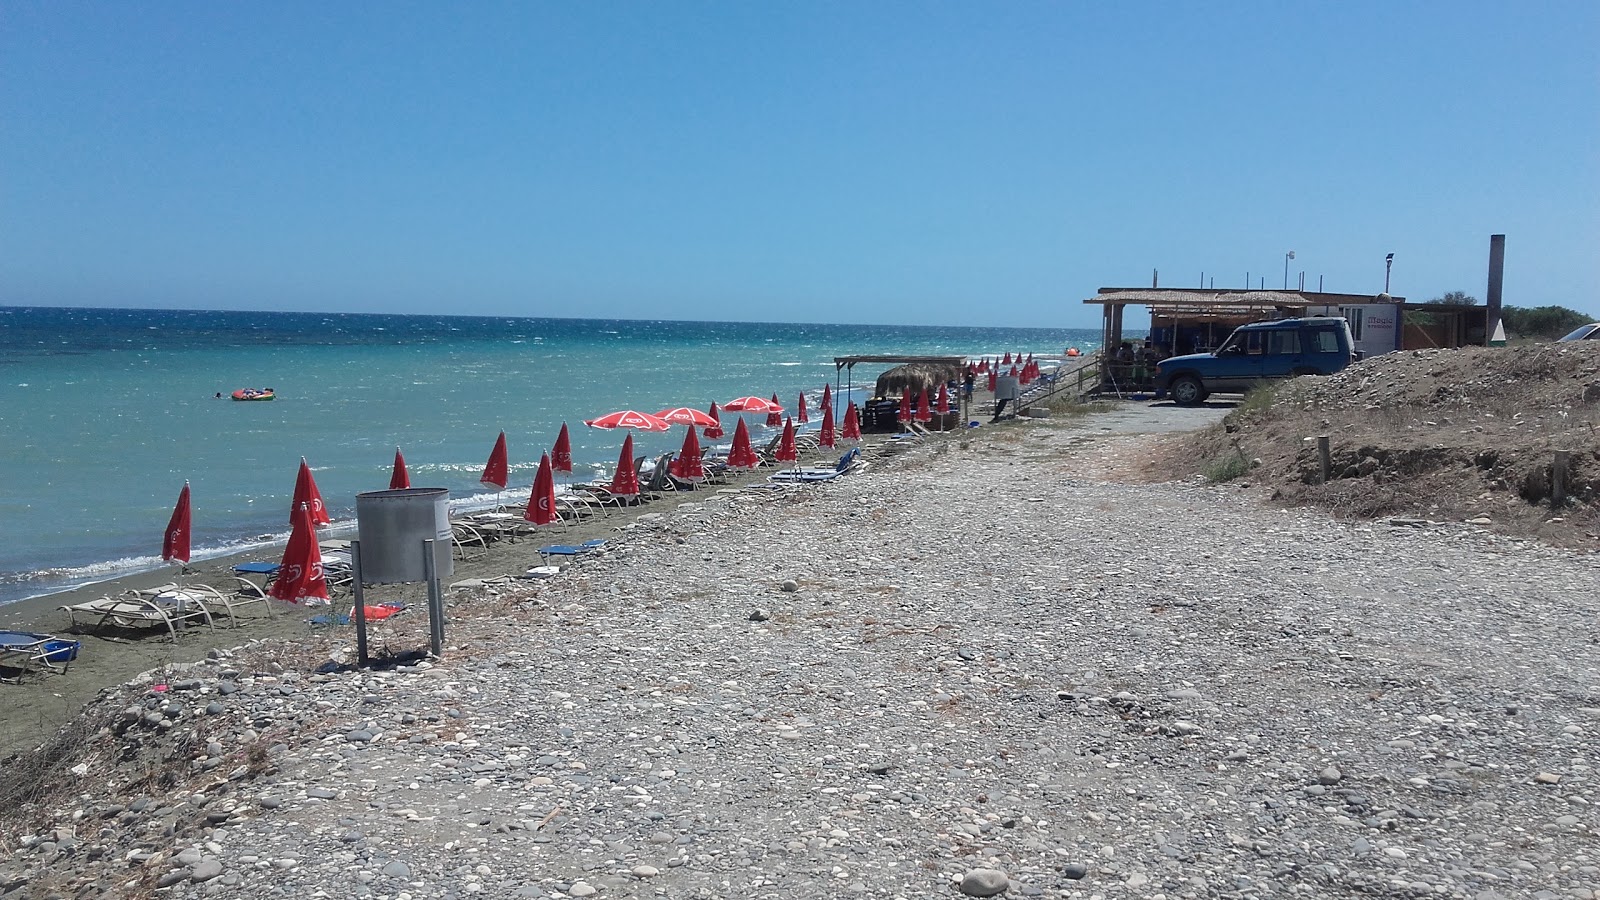 Fotografie cu Mazotos beach zonele de facilități